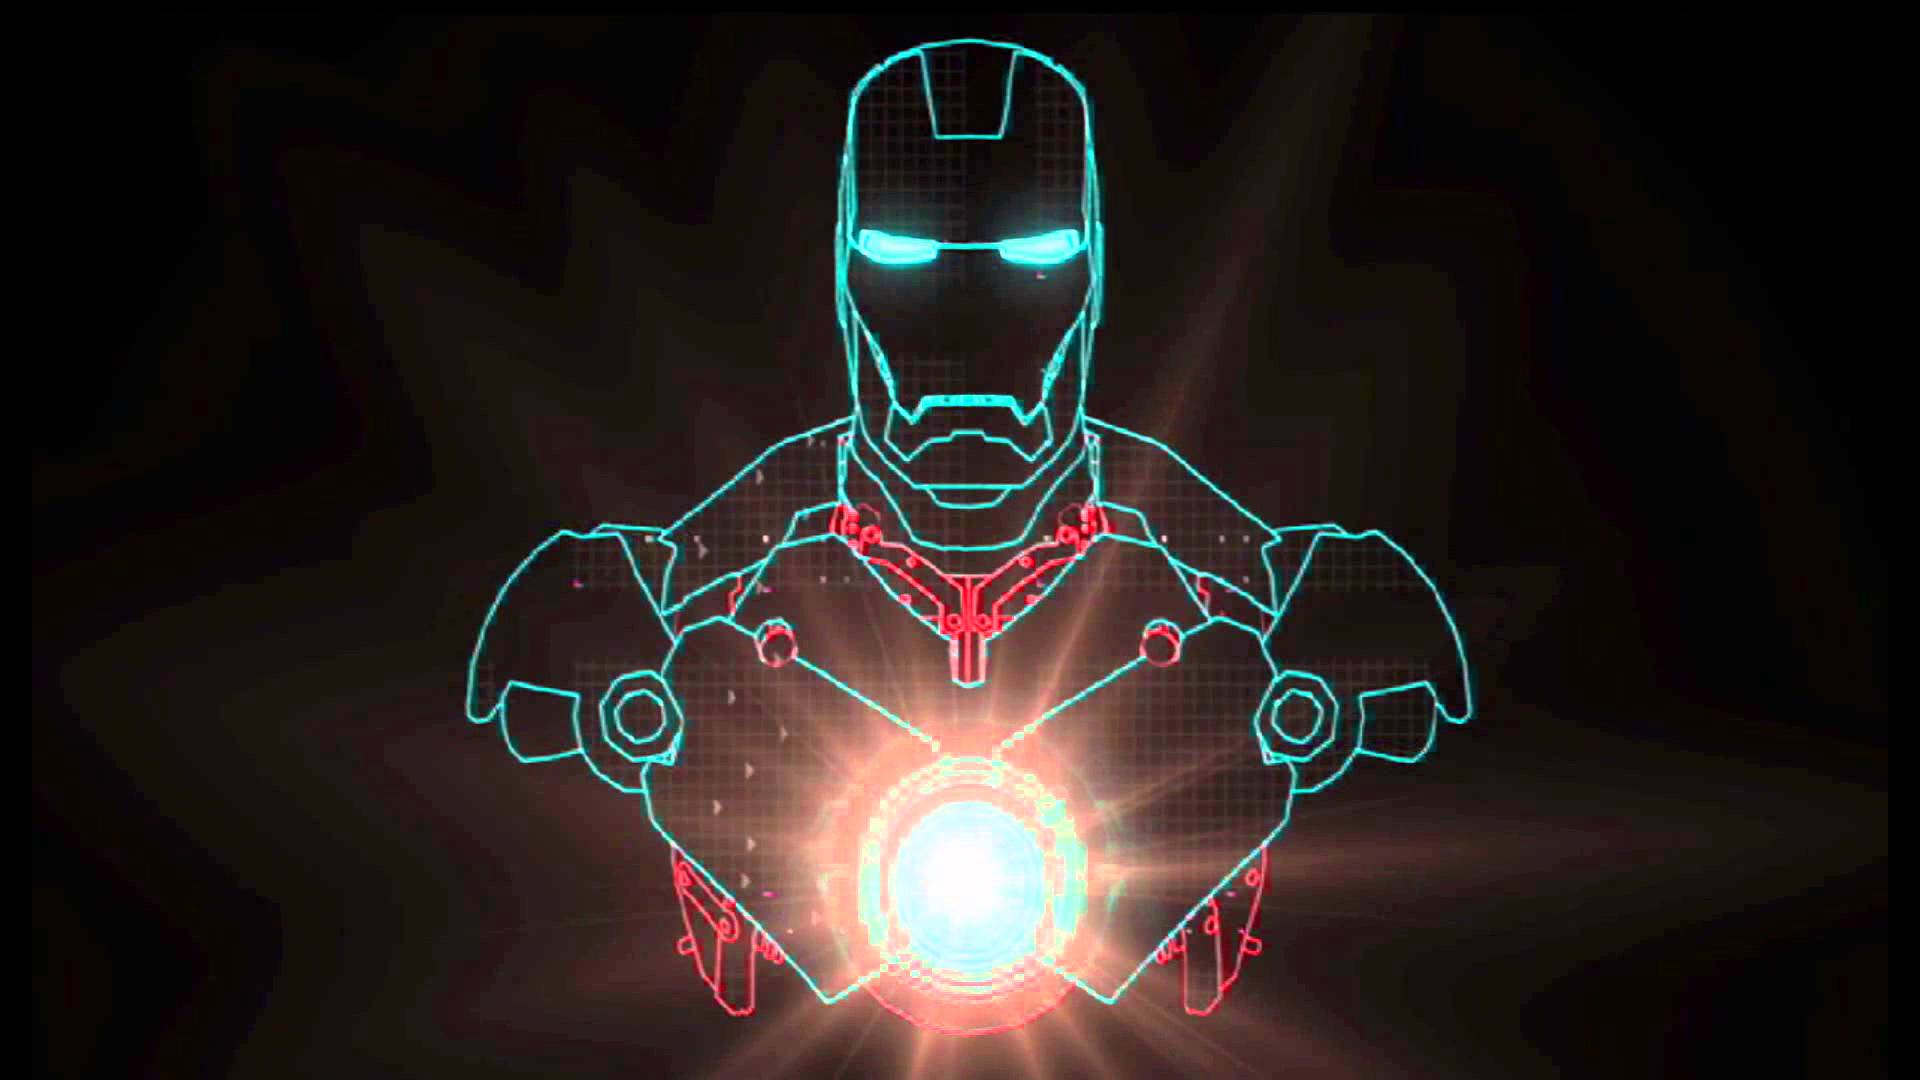 Ironman Arc Dreamscene 1080p HD